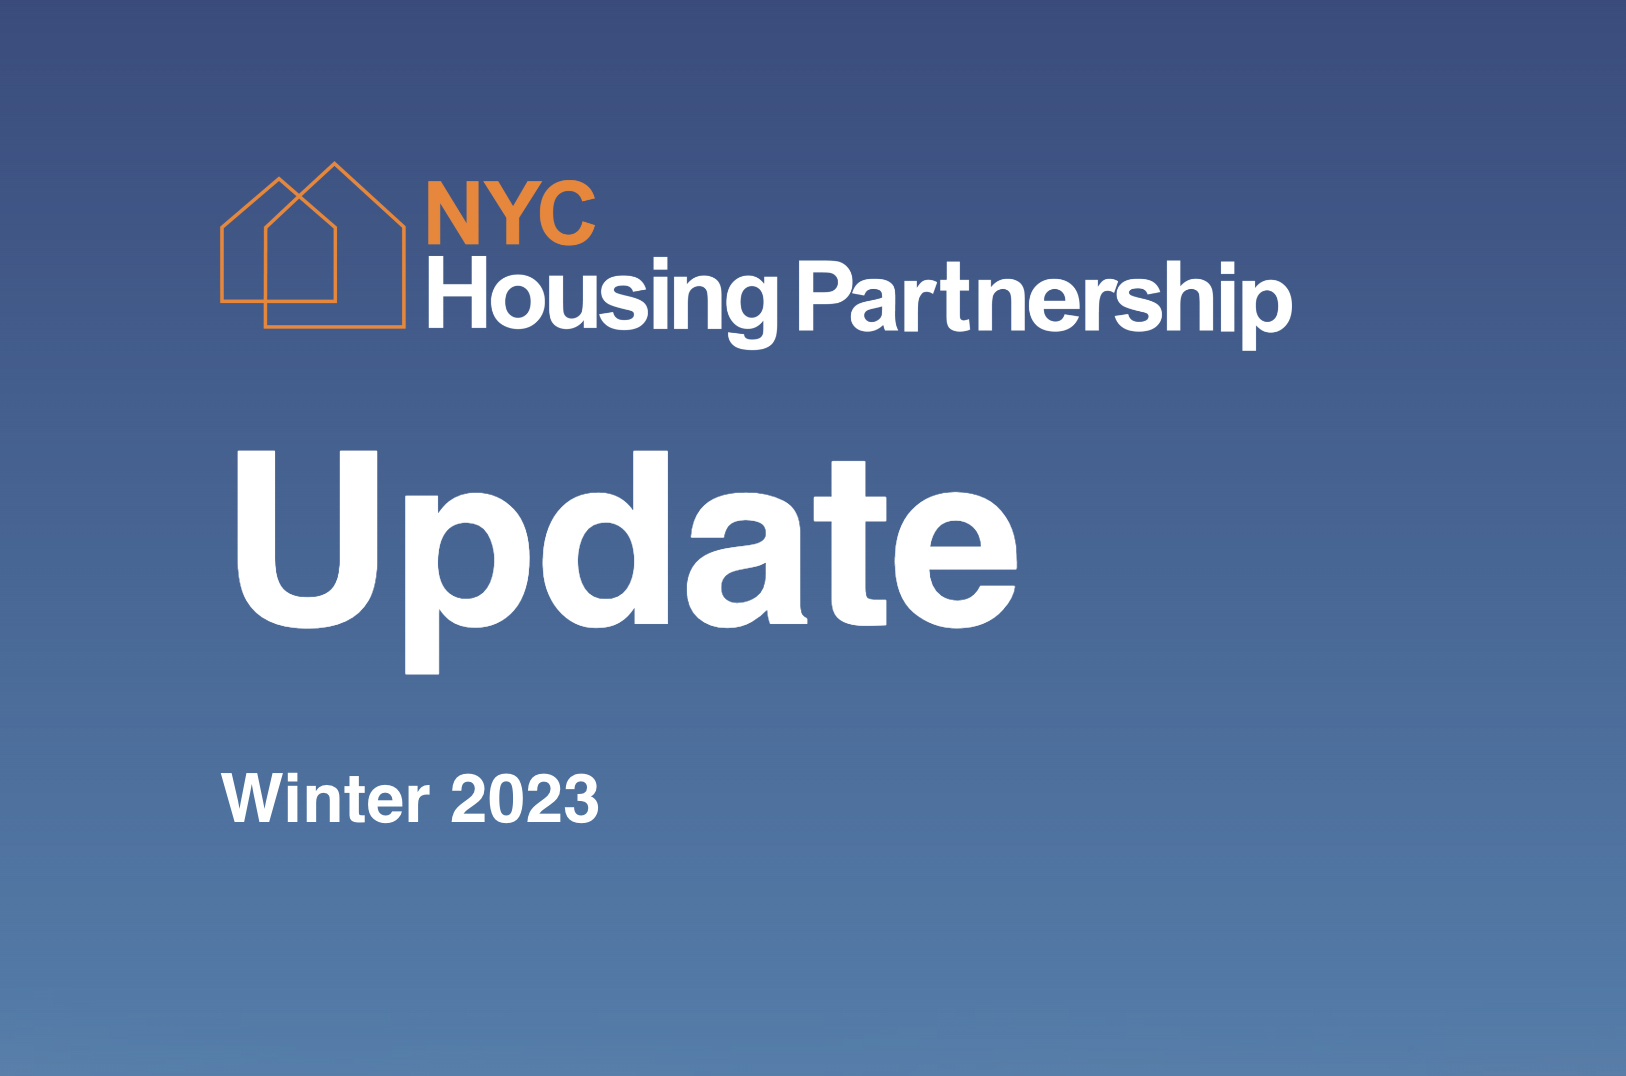 NYC Housing Partnership Update Winter 2023